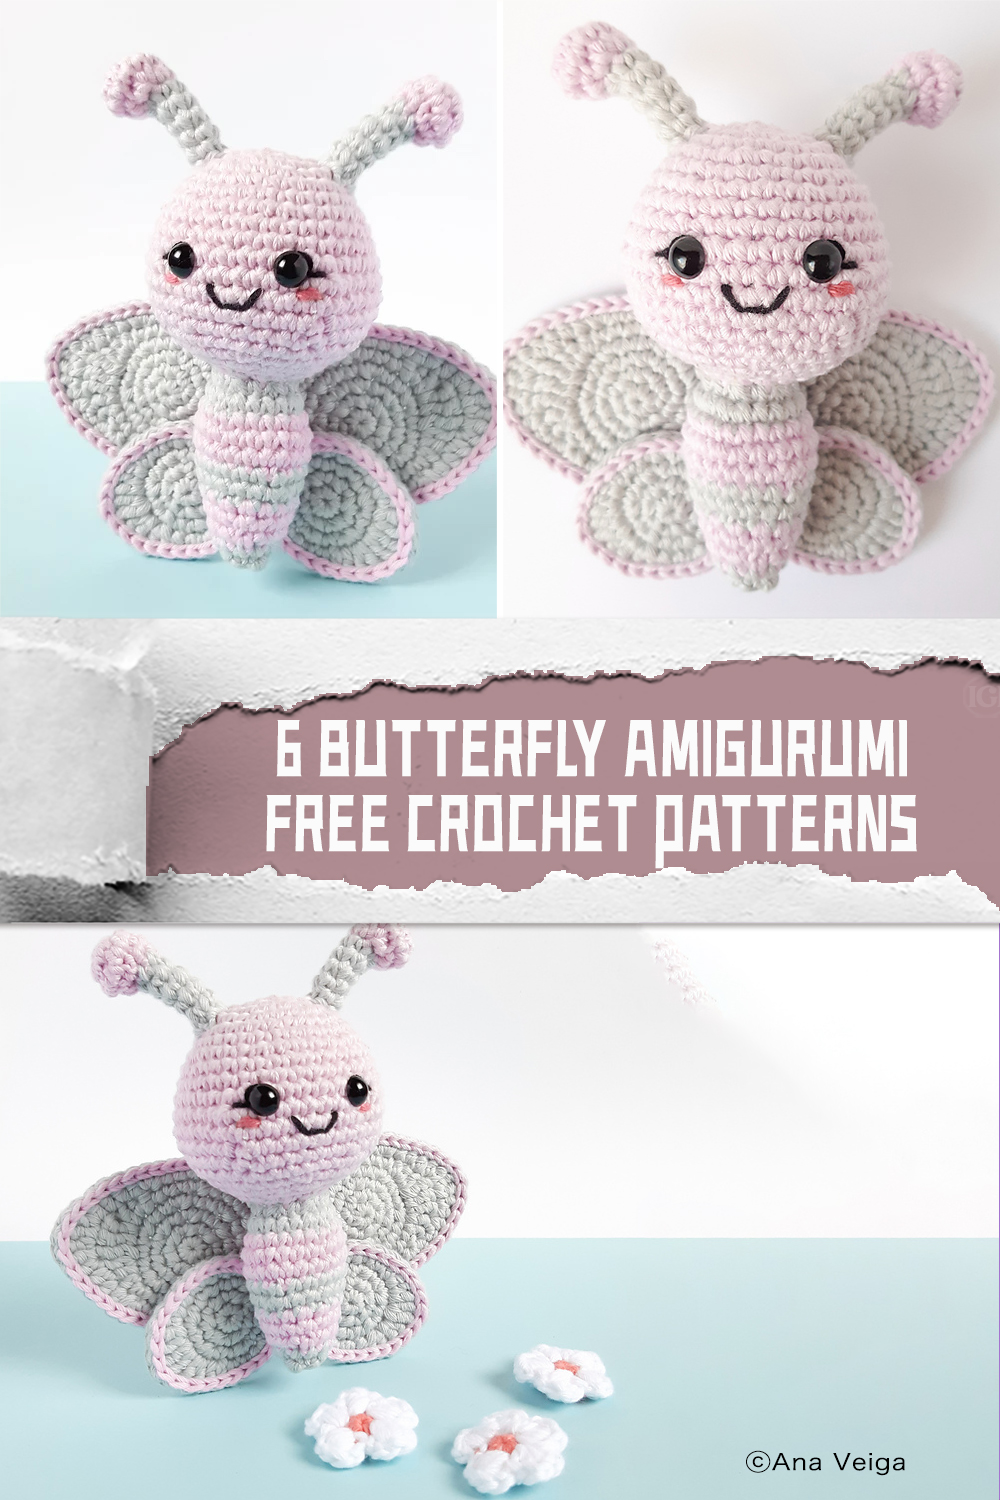 6 Butterfly Amigurumi FREE Crochet Patterns